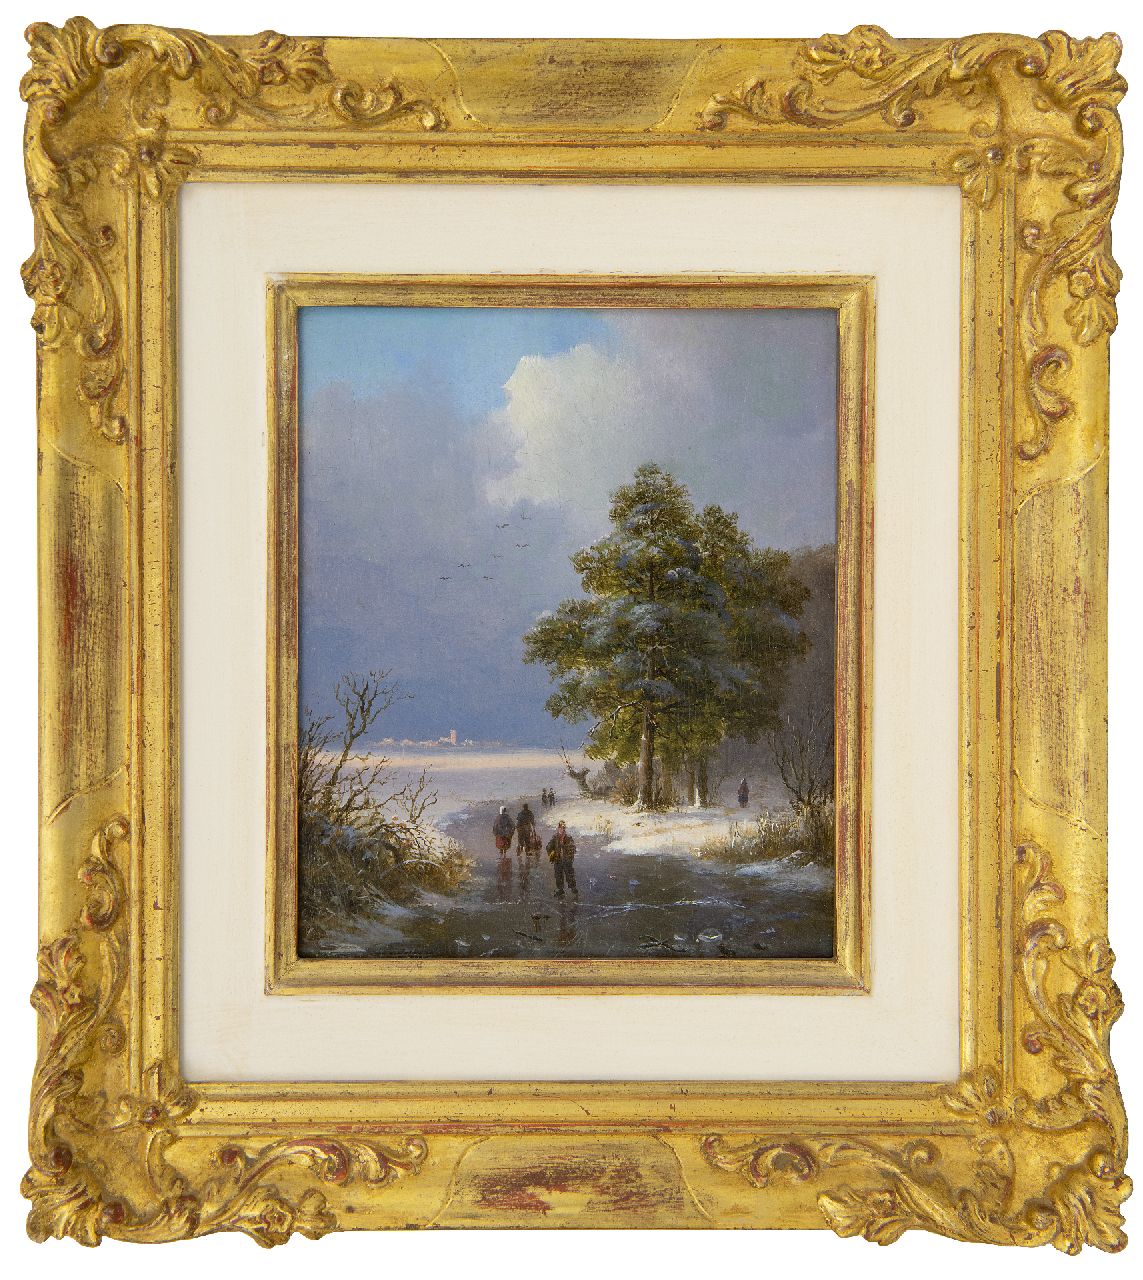 Klombeck J.B.  | Johann Bernard Klombeck | Schilderijen te koop aangeboden | Weids winterlandschap met schaatsers (te koop met zomers pendant), olieverf op paneel 16,4 x 13,5 cm, gesigneerd linksonder en gedateerd 1842